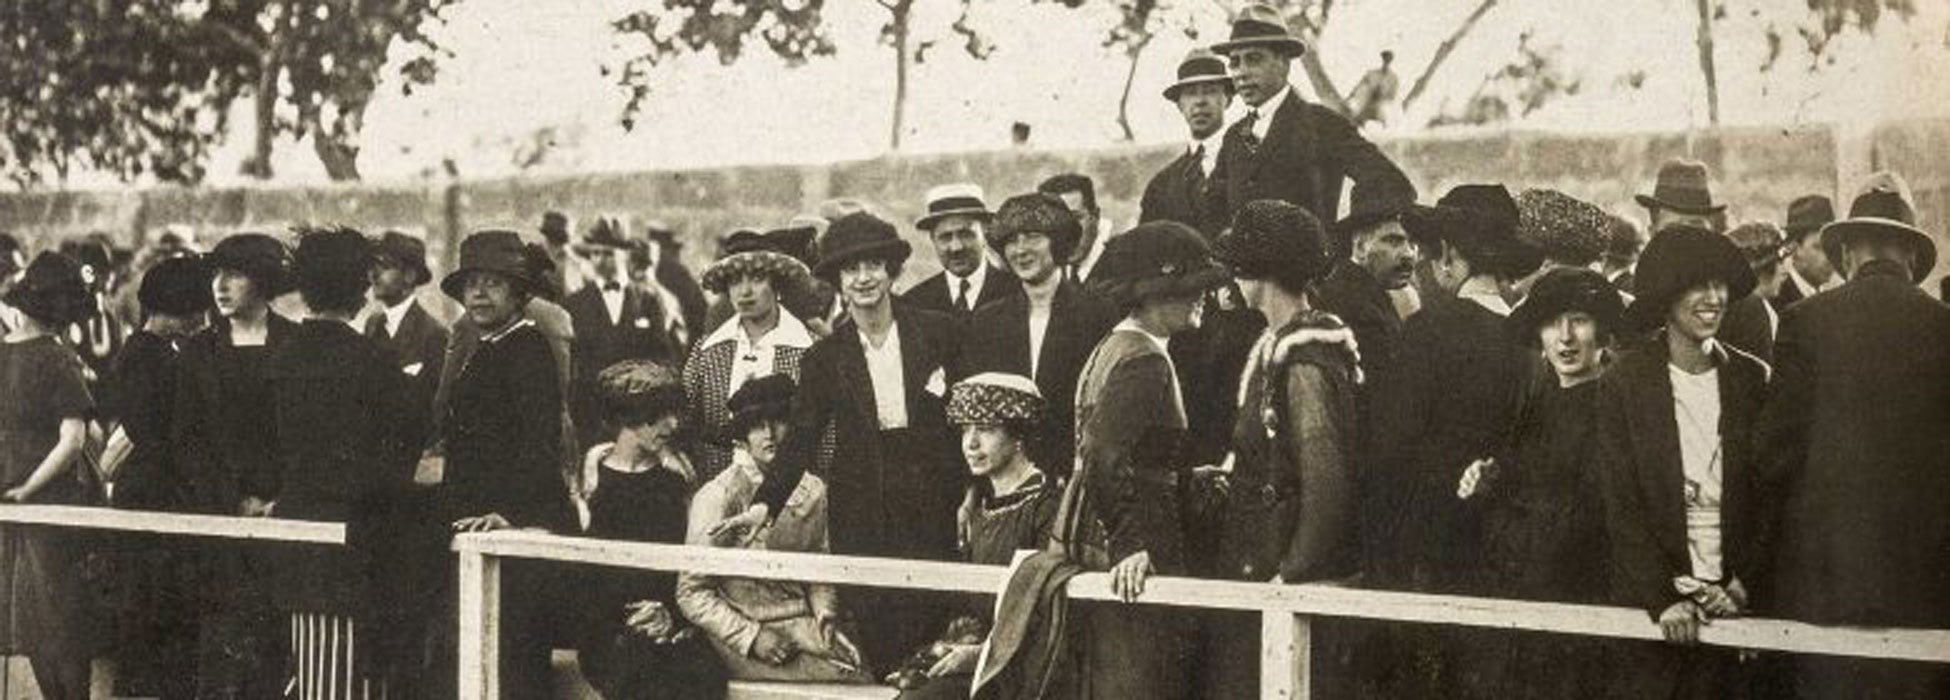 Palma a 1900. La revolució social i demogràfica del segle XX